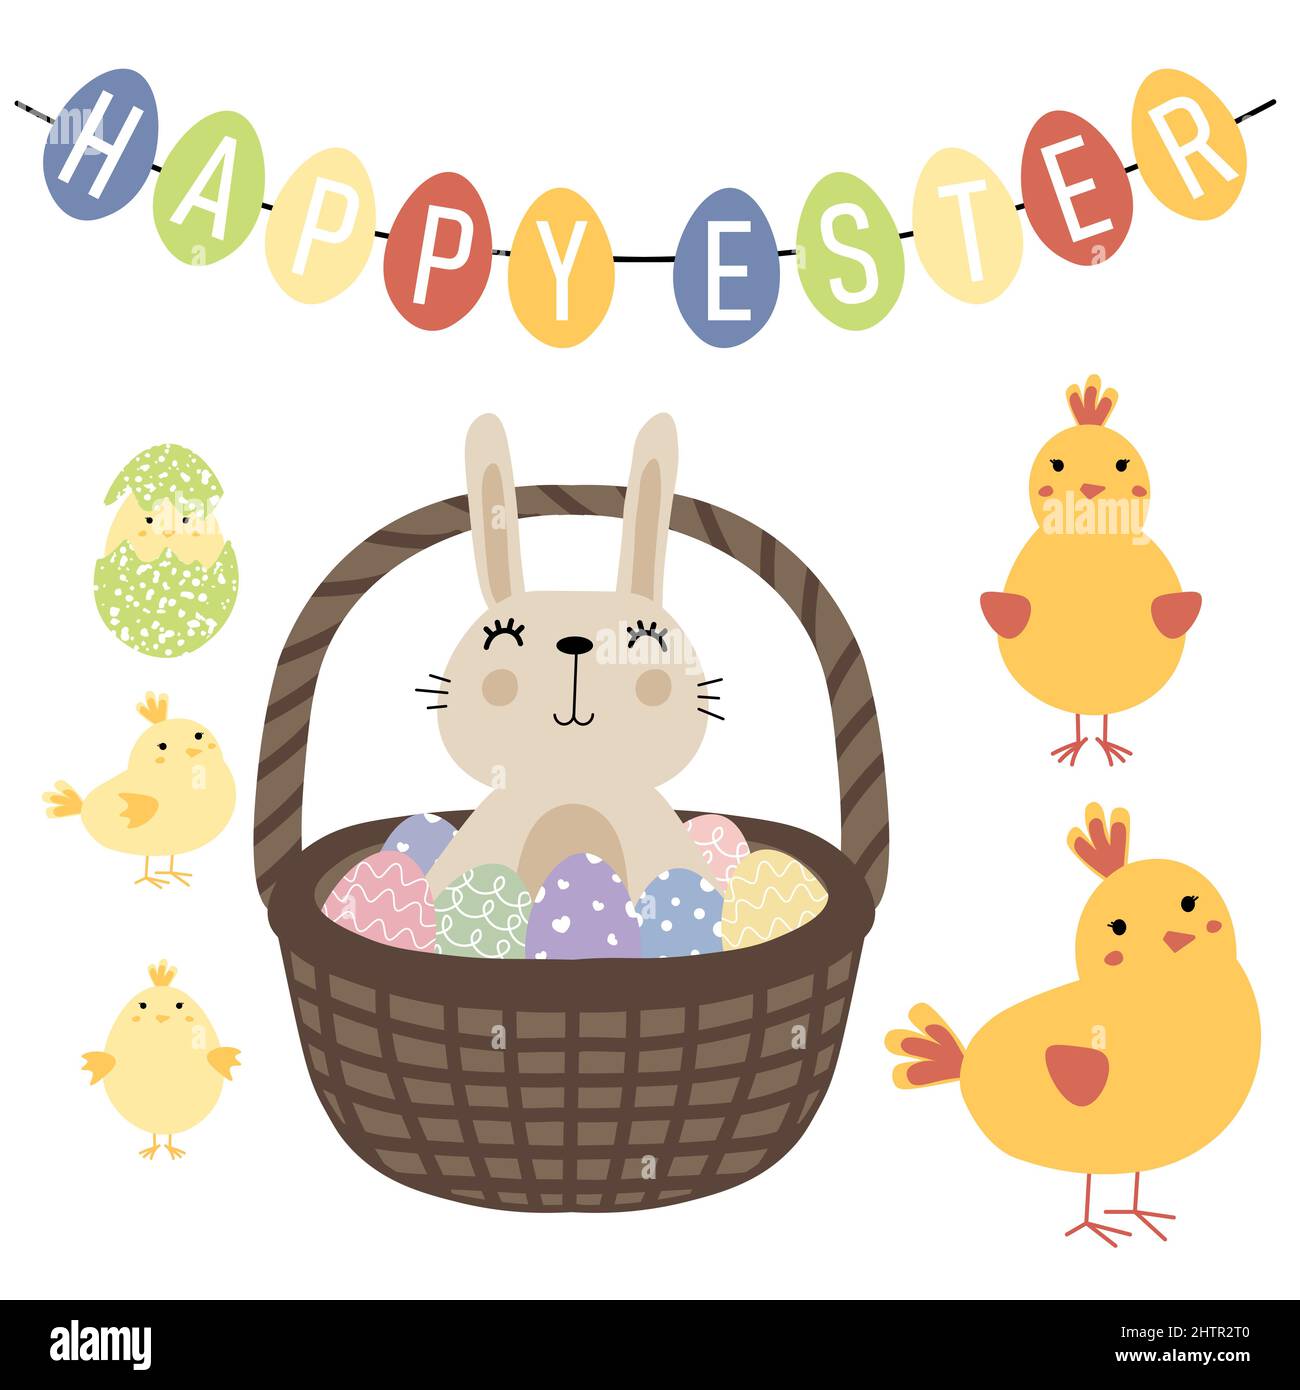 Osterset mit einem Korb mit Eiern und einem Kaninchen, einem Huhn mit kleinem Küken. Frohe Ostern Grüße Text. Design für Titel für die Website, Banner, Poster Stock Vektor